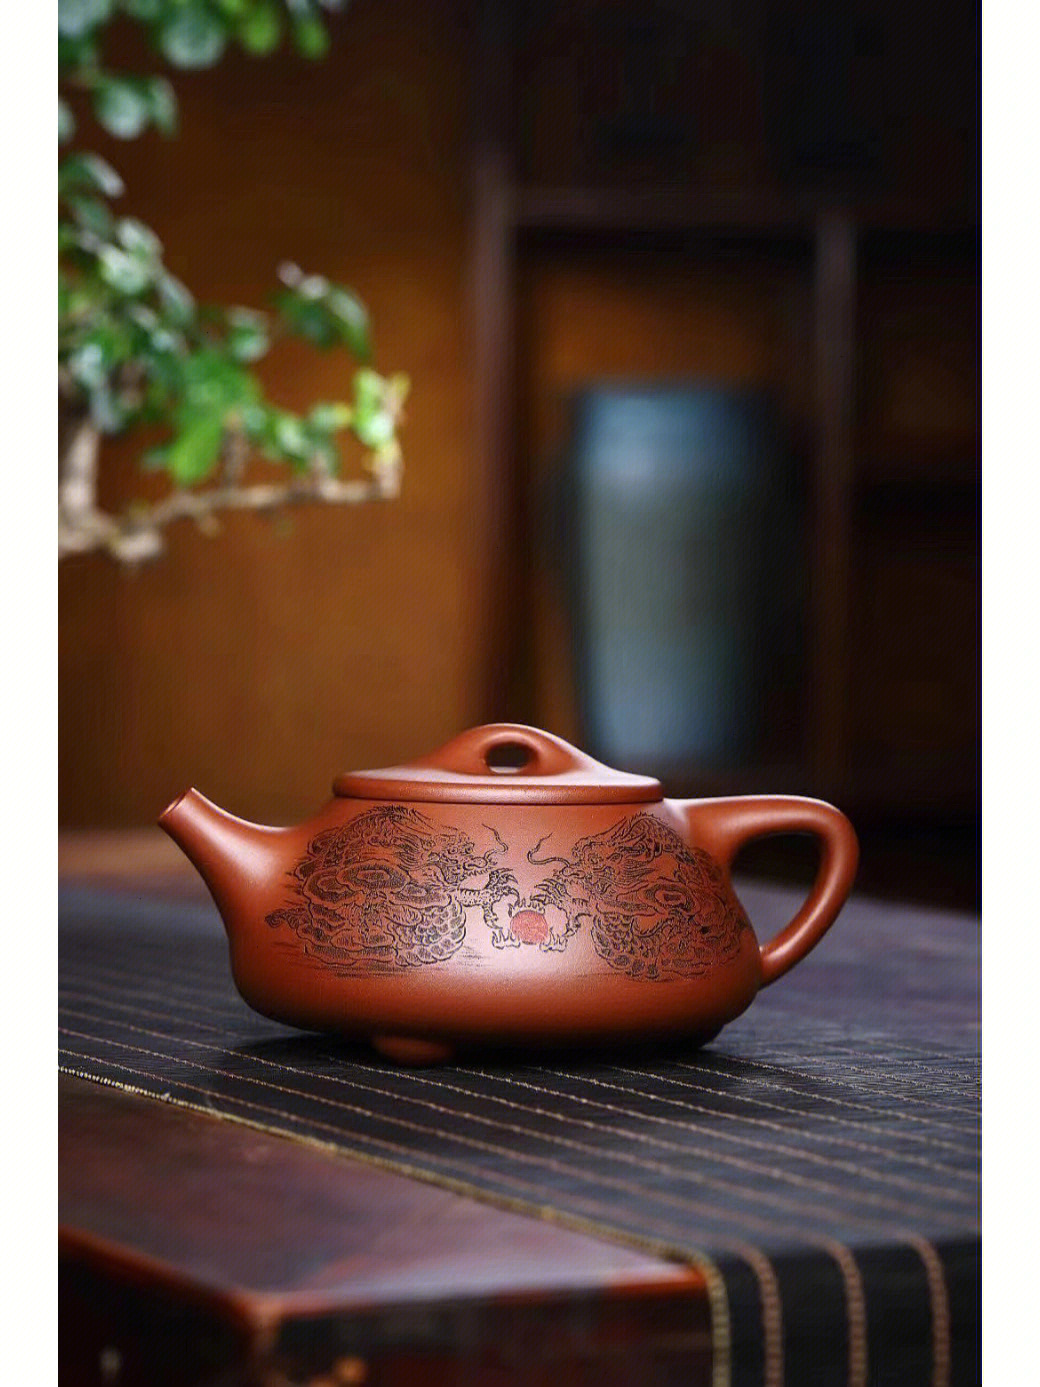 吴伟明 字鸣远#茶器#让茶变好喝的茶具#紫砂#茶具#宜兴